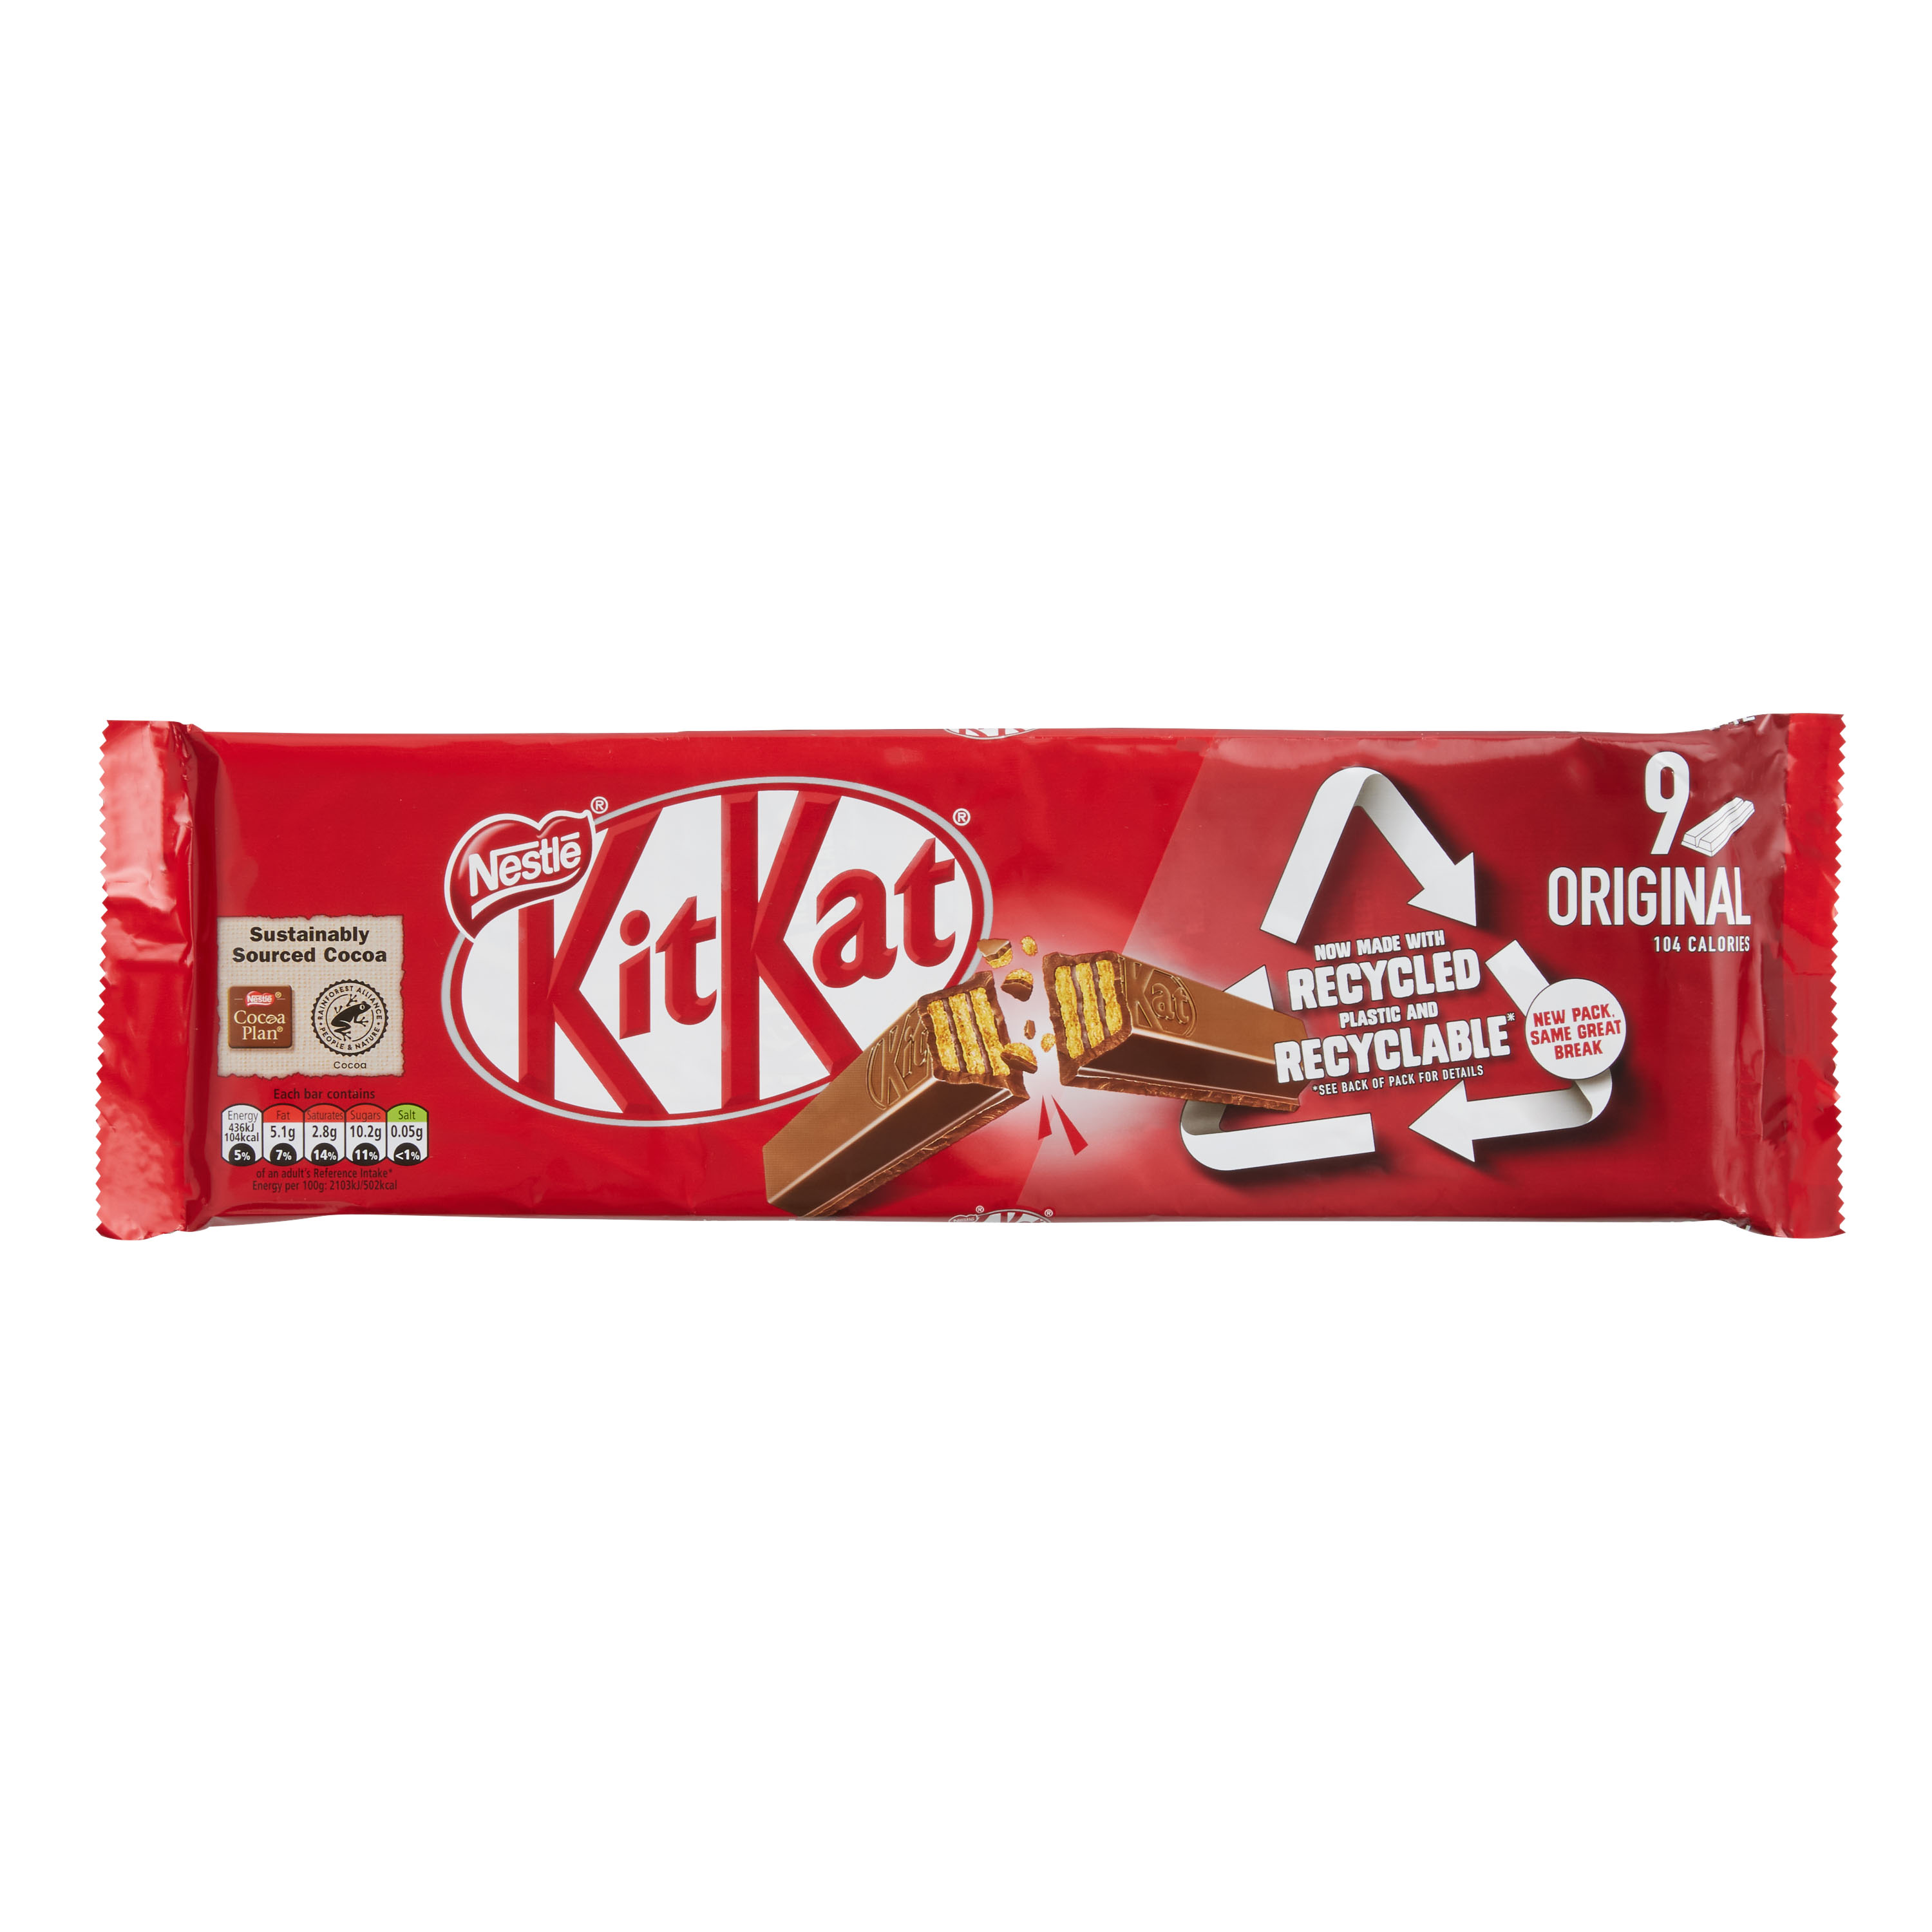 KitKat Maker Nestlé Lose Legal Battle for 4-Finger Chocolate Bar